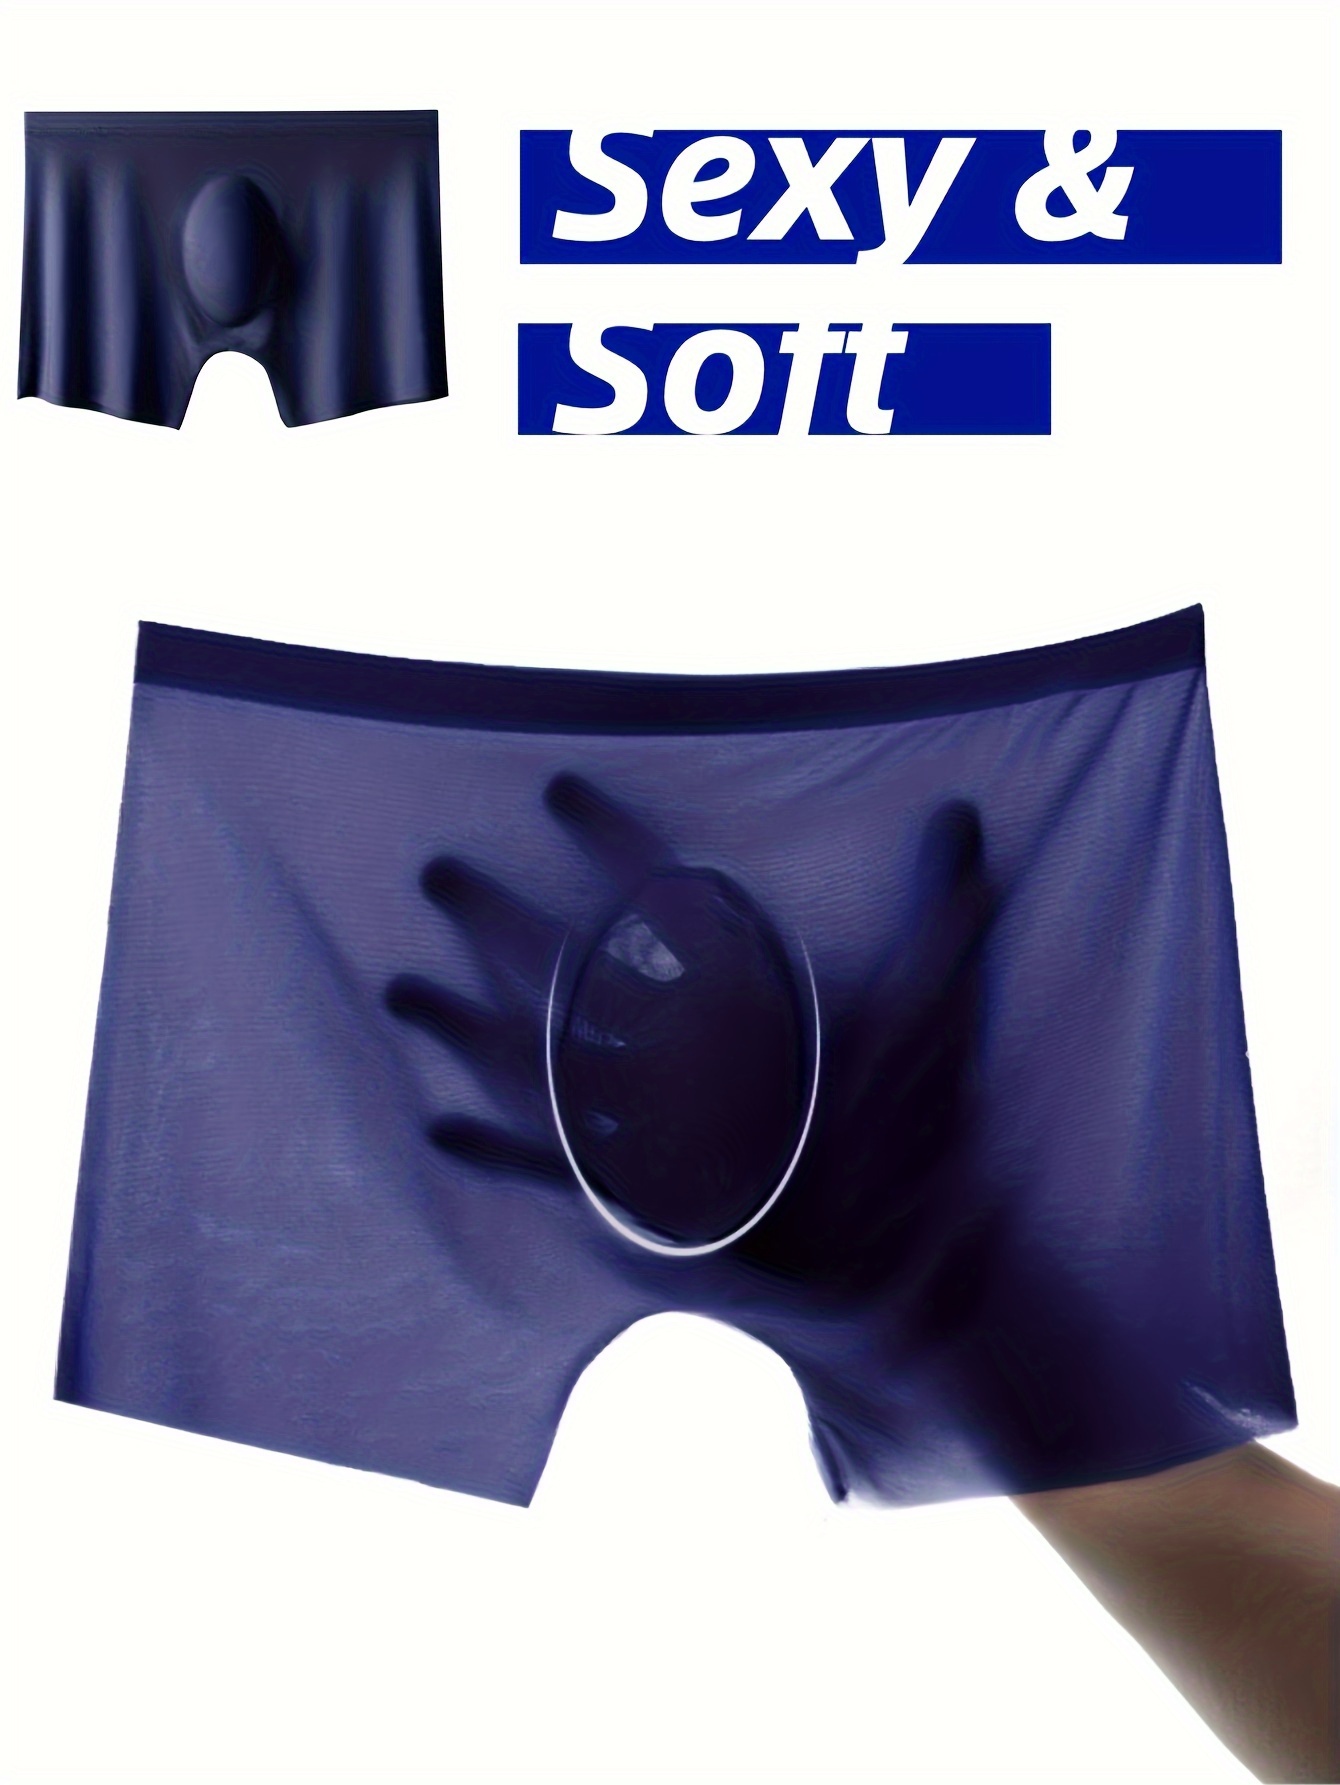 Soft Men's Boxer Shorts